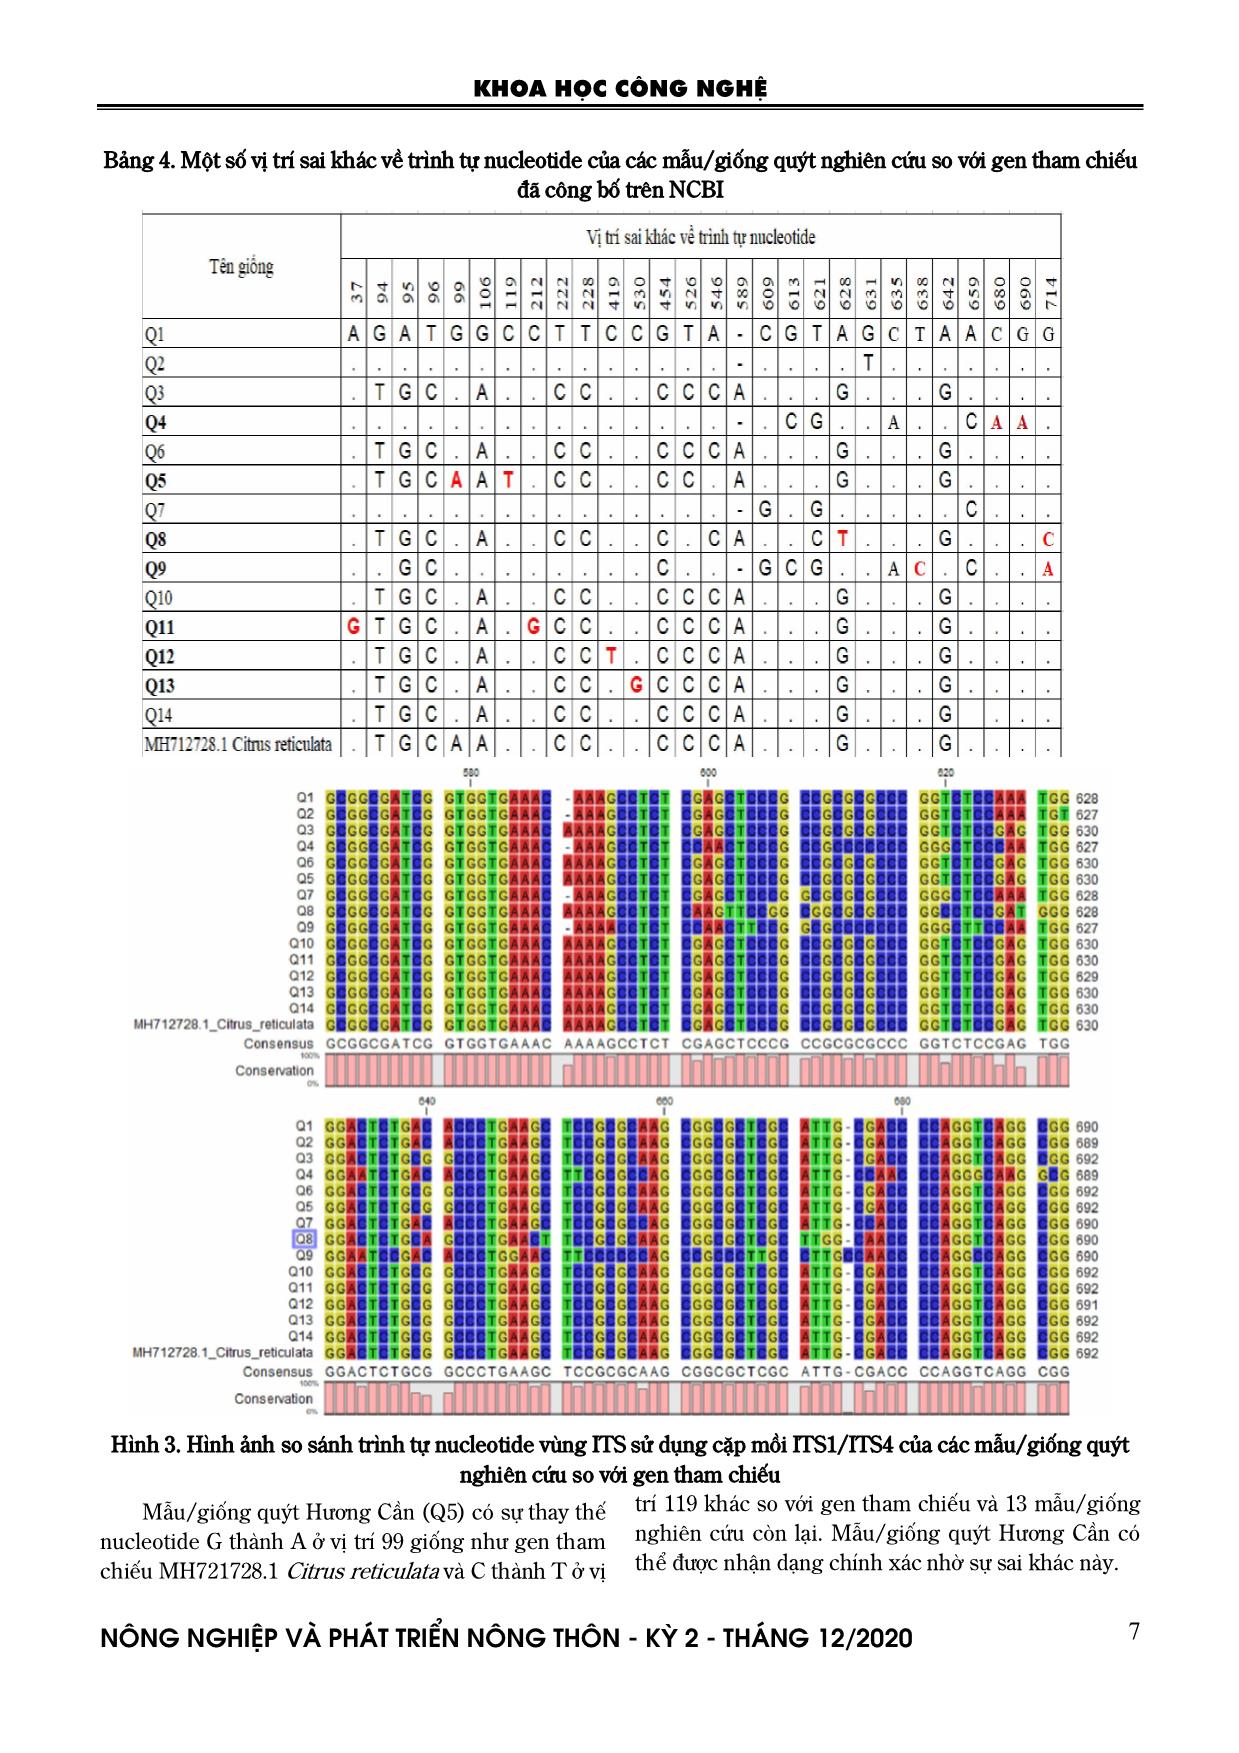 Nghiên cứu đa dạng di truyền và nhận dạng một số giống quýt bản địa của Việt Nam dựa trên trình tự ITS hệ gen nhân trang 5